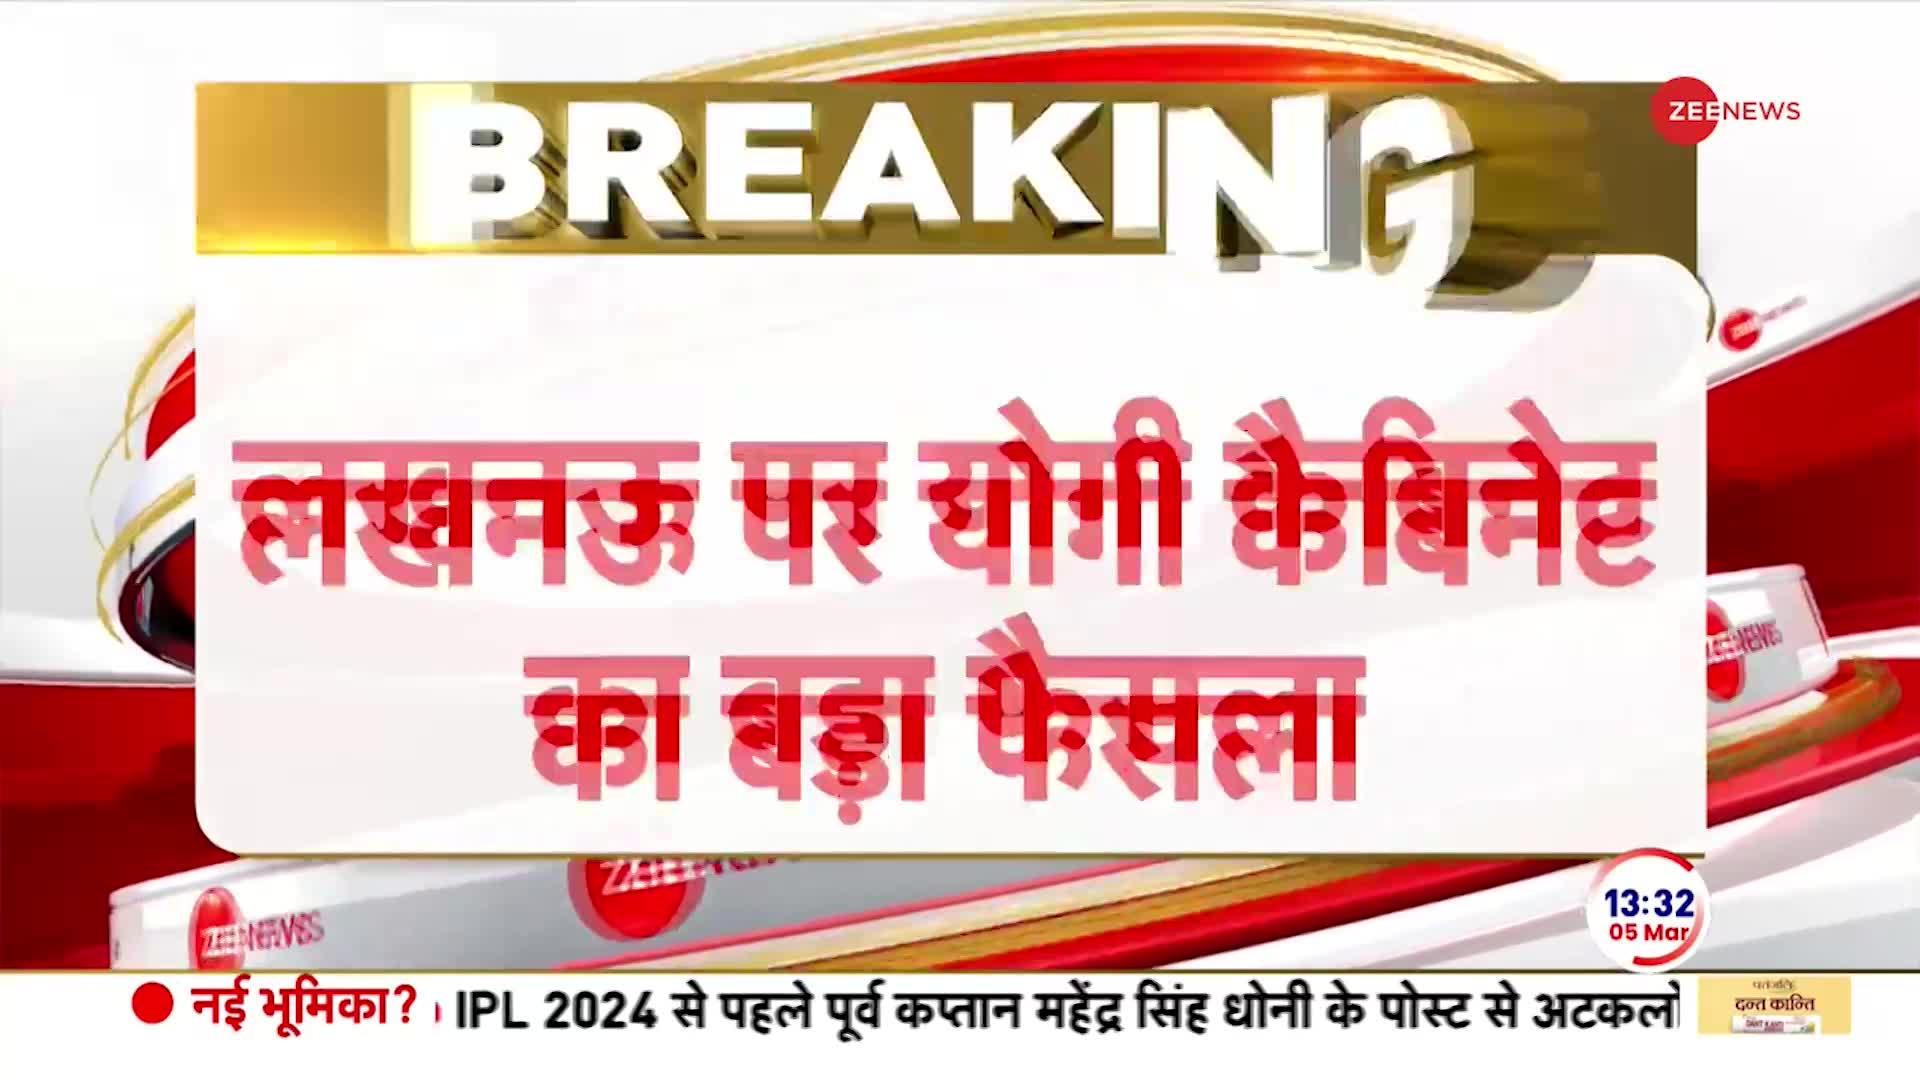 CM Yogi on Lucknow: लखनऊ से सटे 6 जिलों का तेजी से विकास होगा